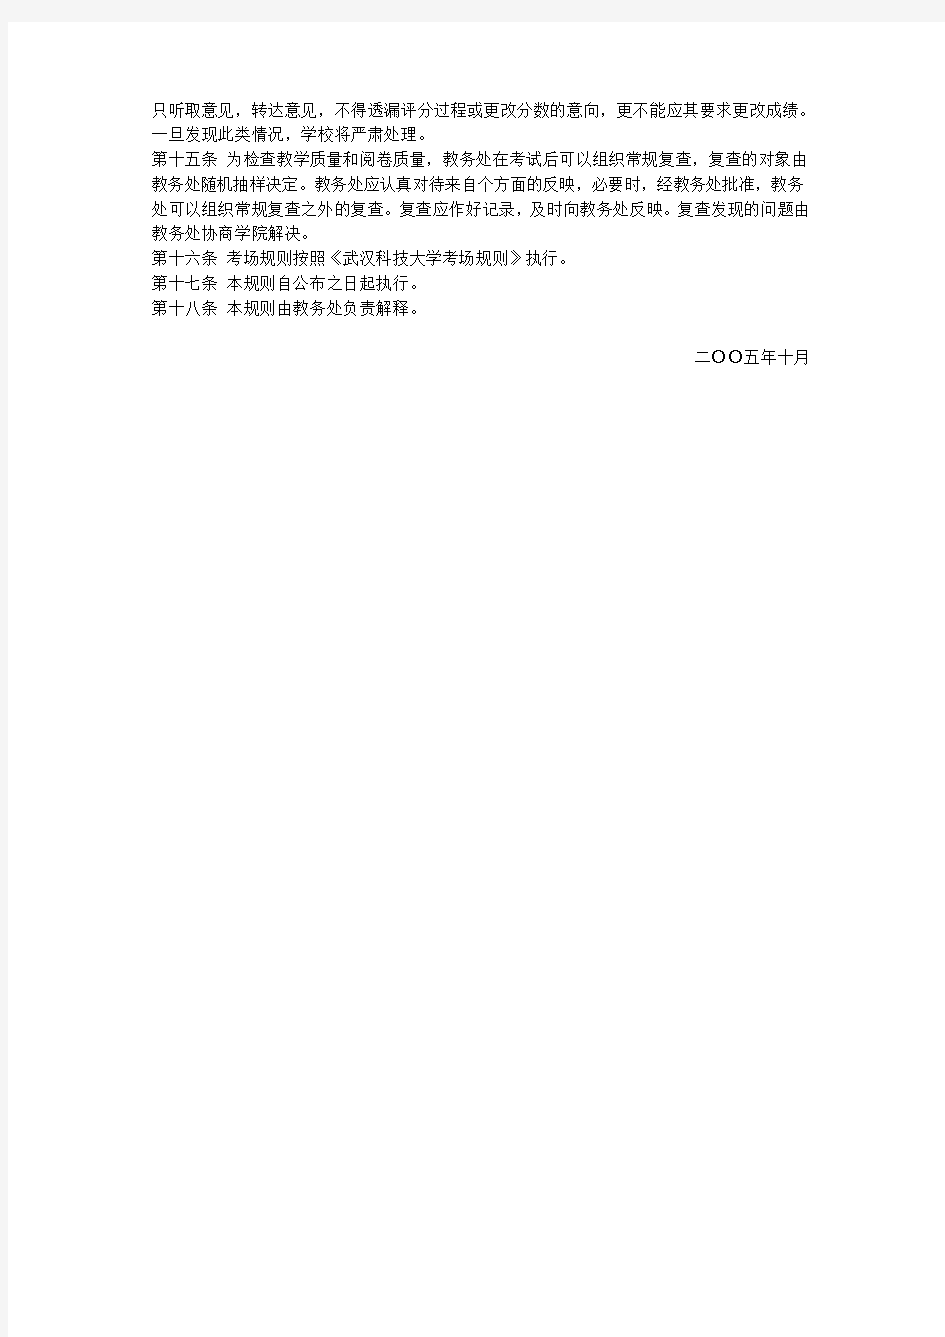 武汉科技大学考试工作规范